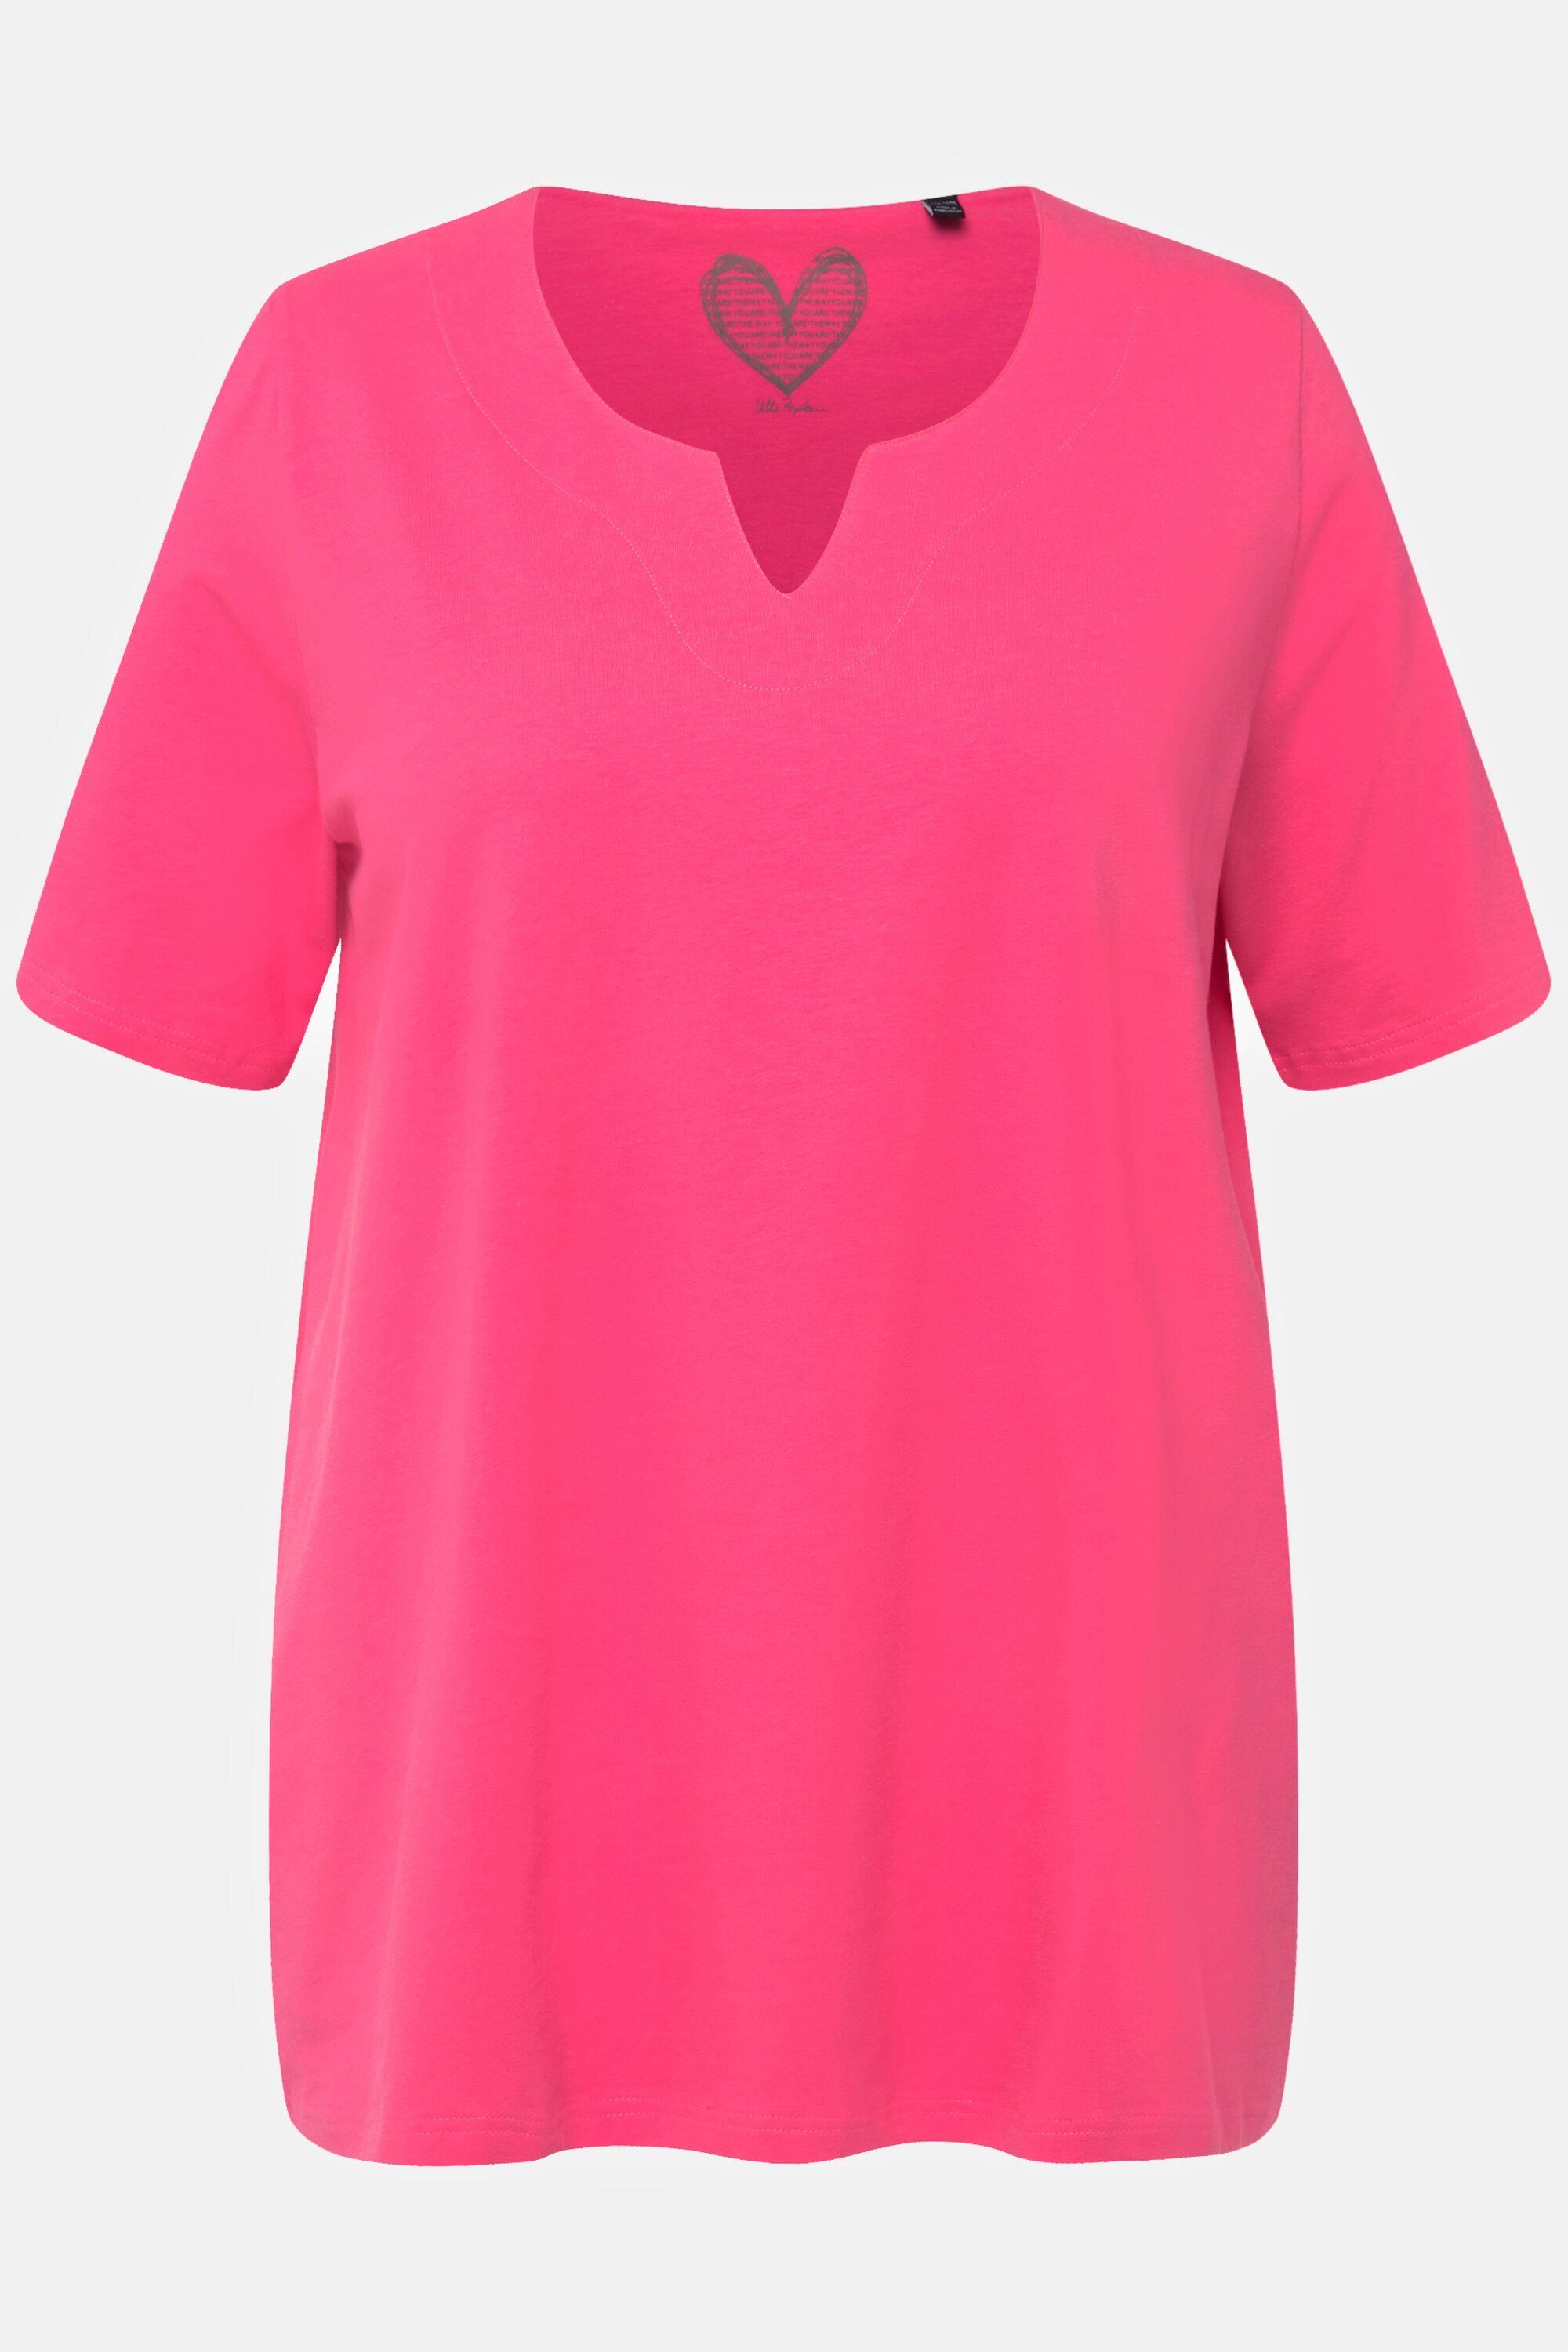 rosa Tunika-Ausschnitt T-Shirt Halbarm Popken Ulla Rundhalsshirt A-Linie